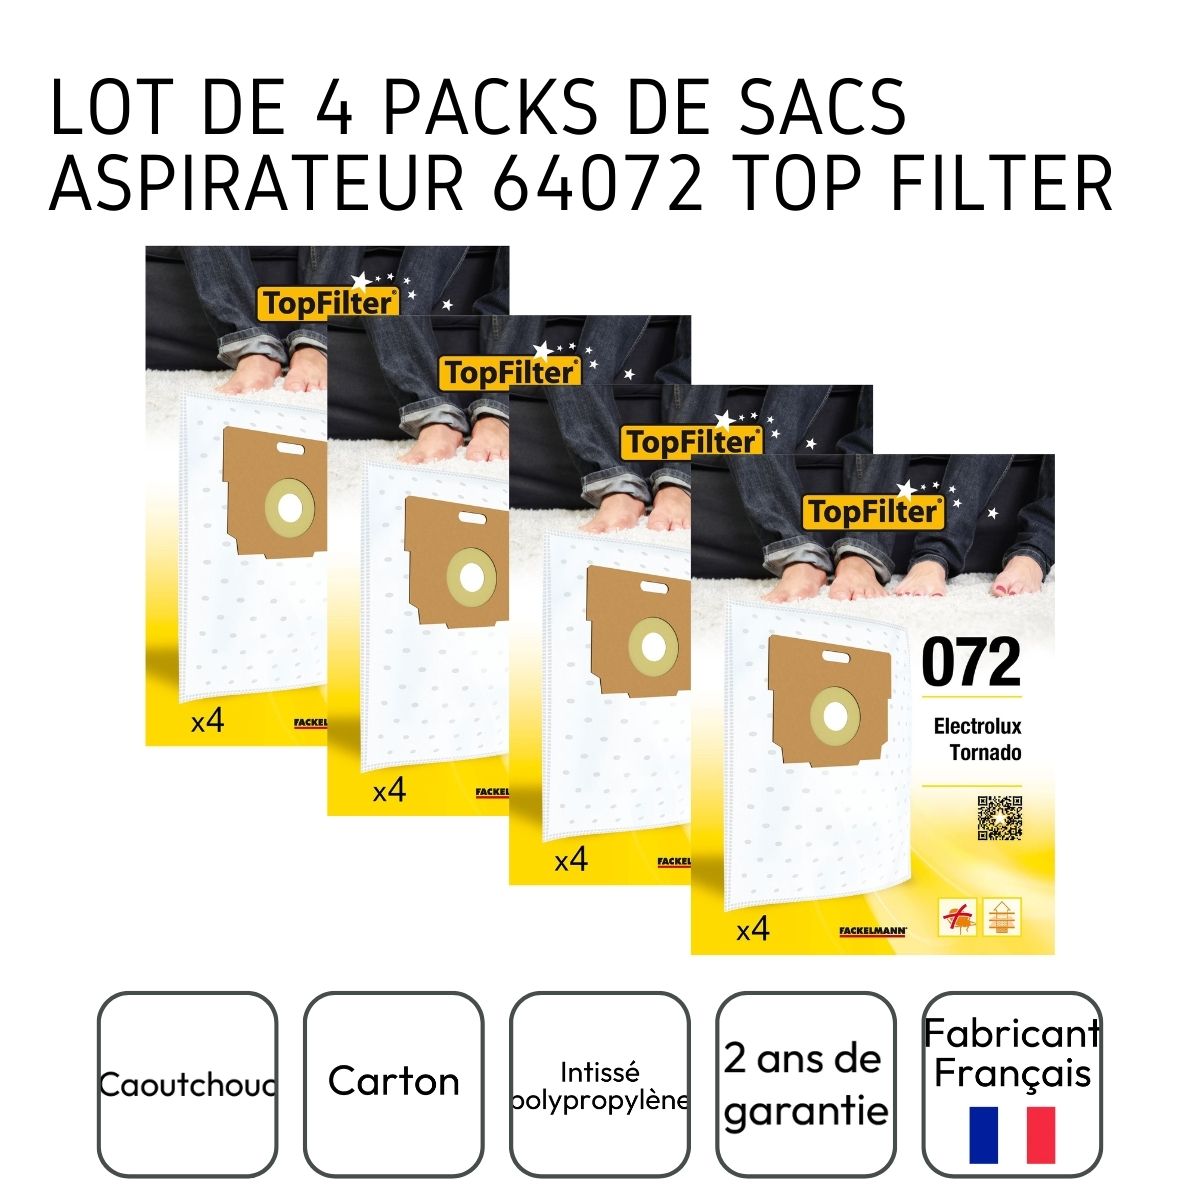 Lot de 4 packs de 4 sacs aspirateur 64072 Tornado TopFilter Premium